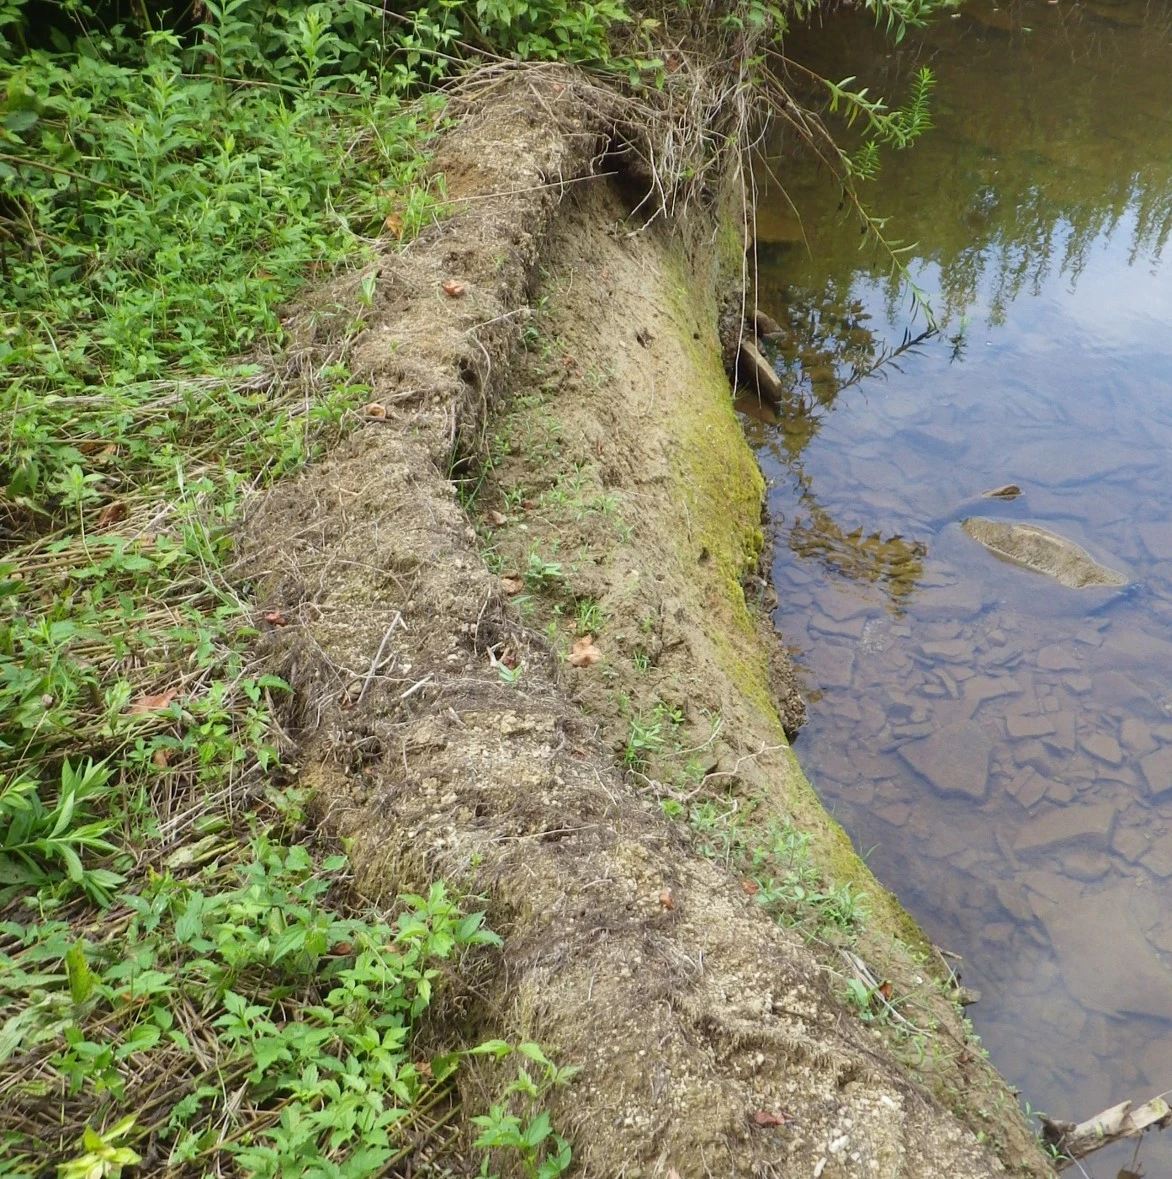 Exposed soil on stream shoreline.